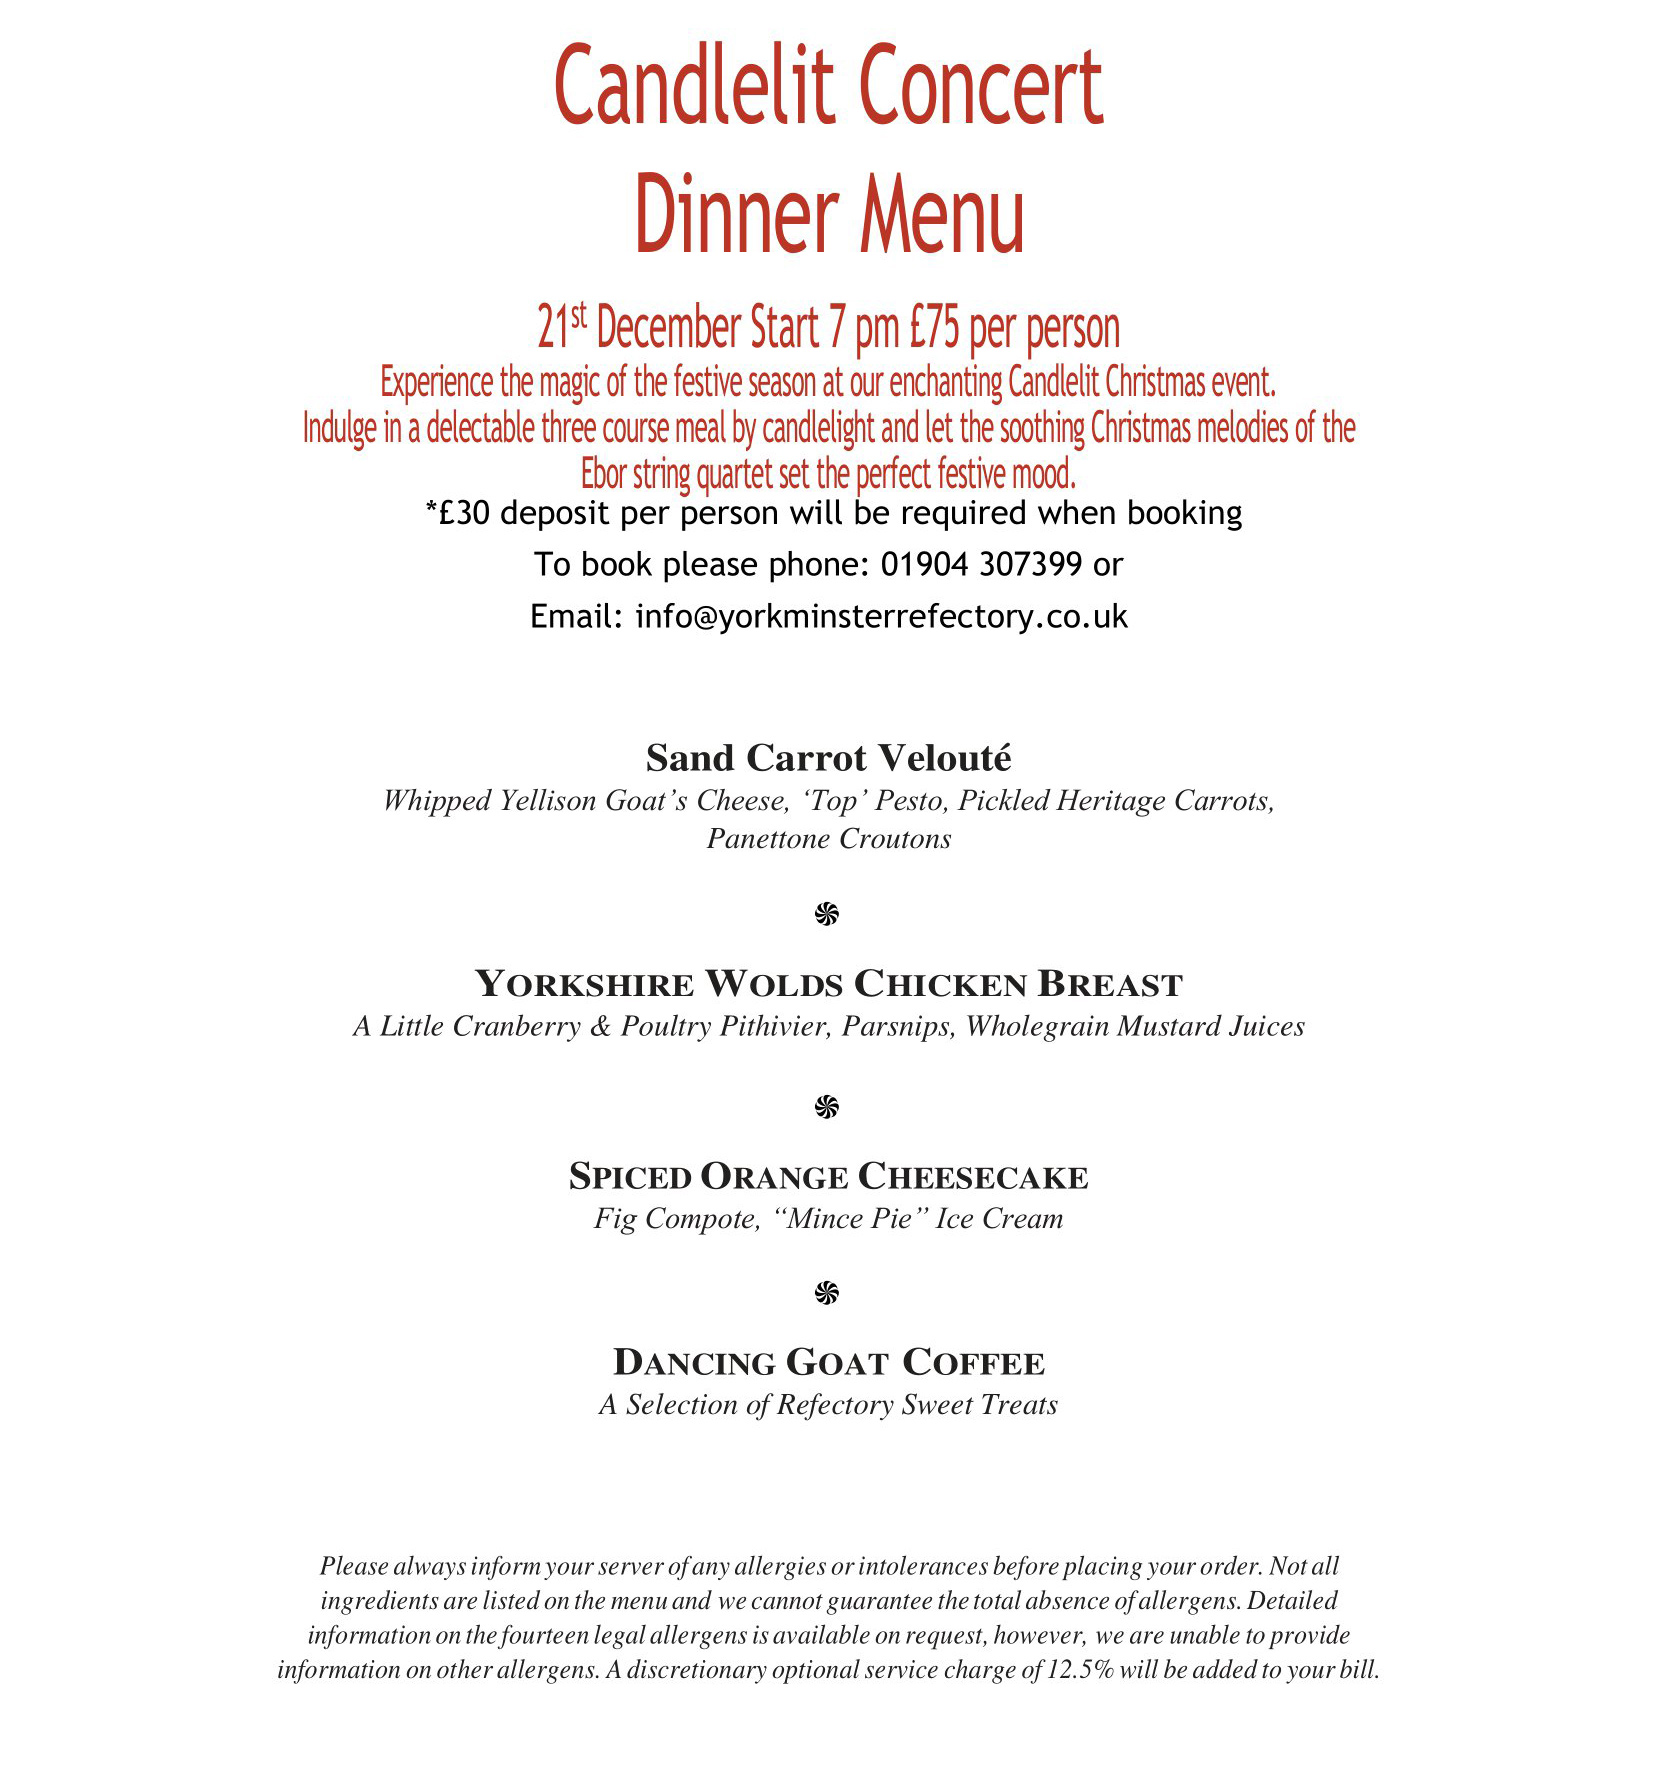 Candlelit Concert Dinner Menu